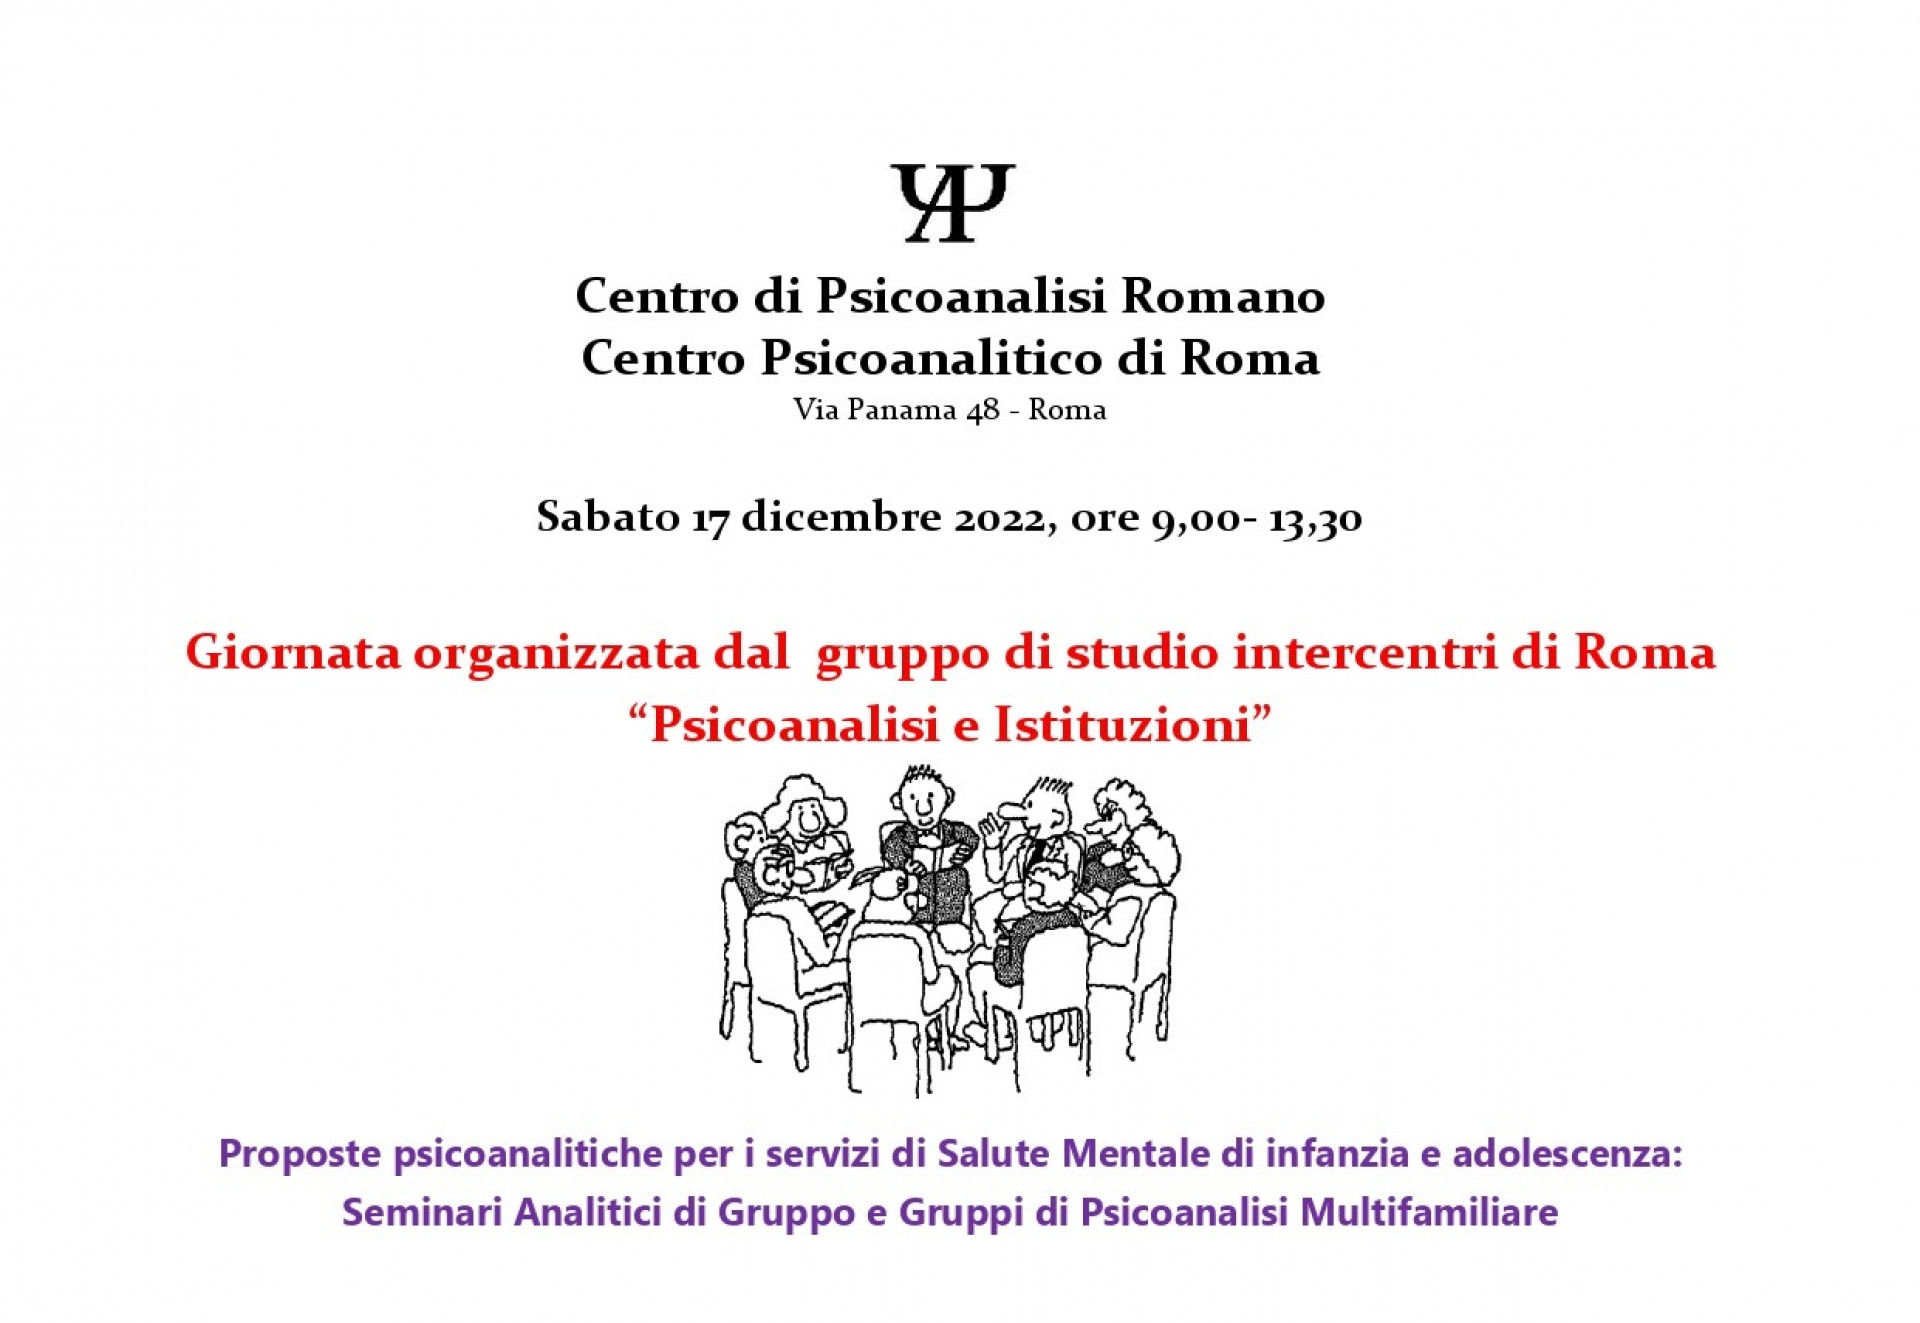 Giornata organizzata dal gruppo di studio Intercentri di Roma “Psicoanalisi e Istituzioni”